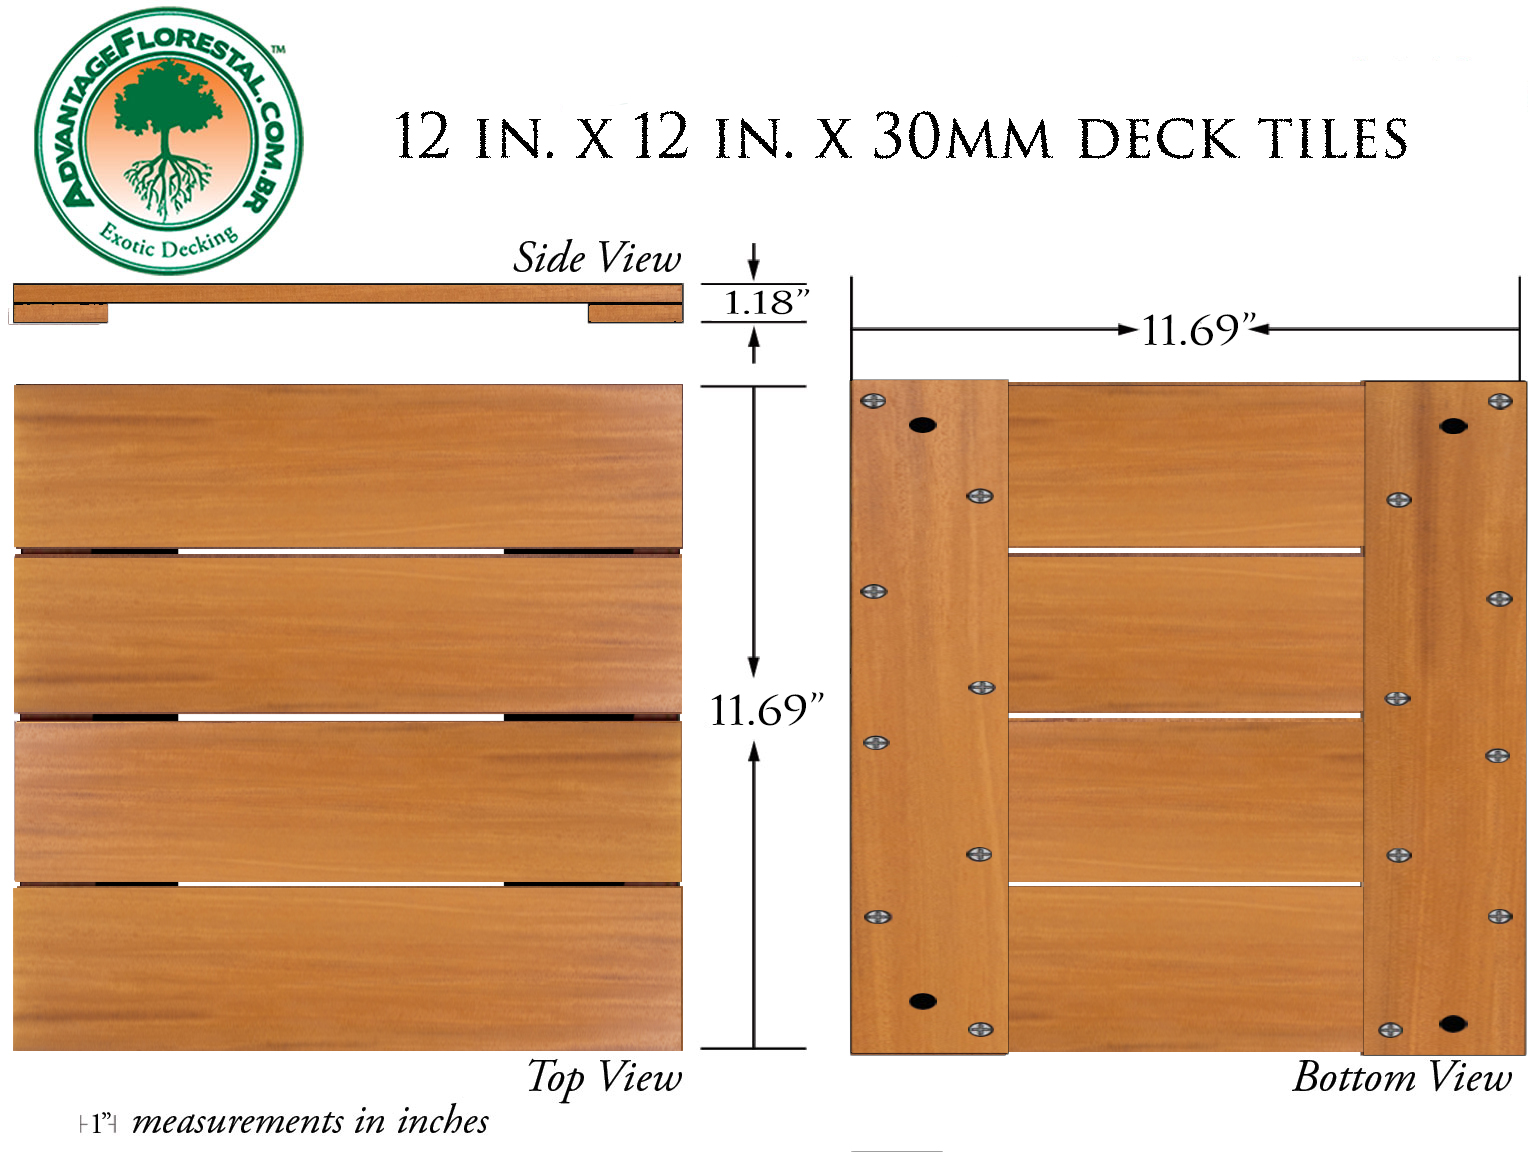 IPE Deck Tile 12in. x 12 in. x 30mm